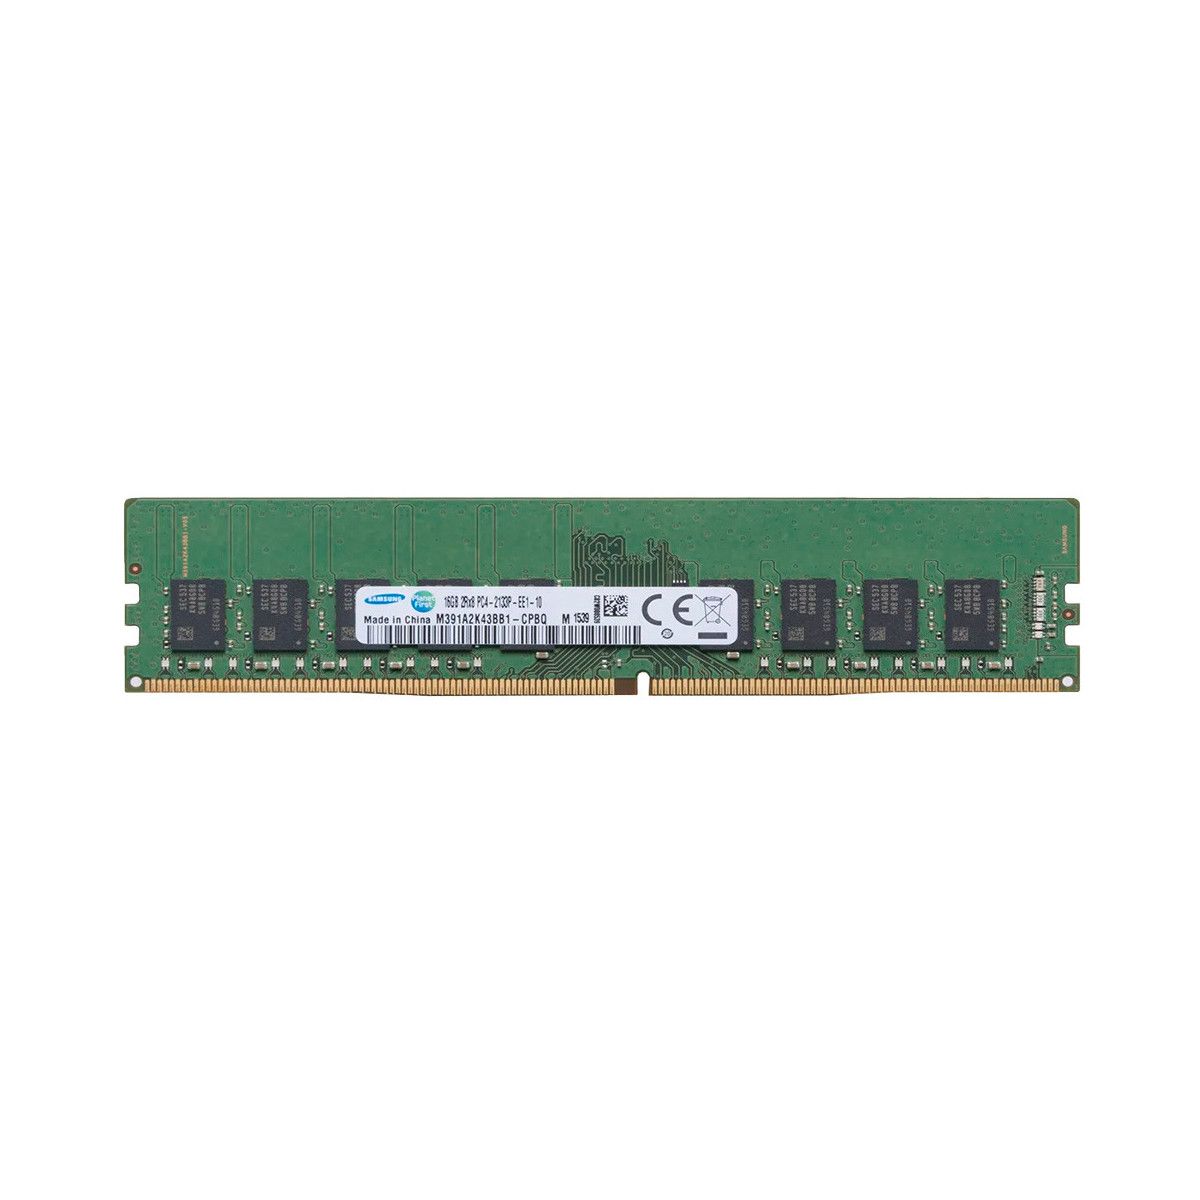 46W0817-MS - Memstar 1x 16GB DDR4-2133 ECC UDIMM PC4-17000P-E